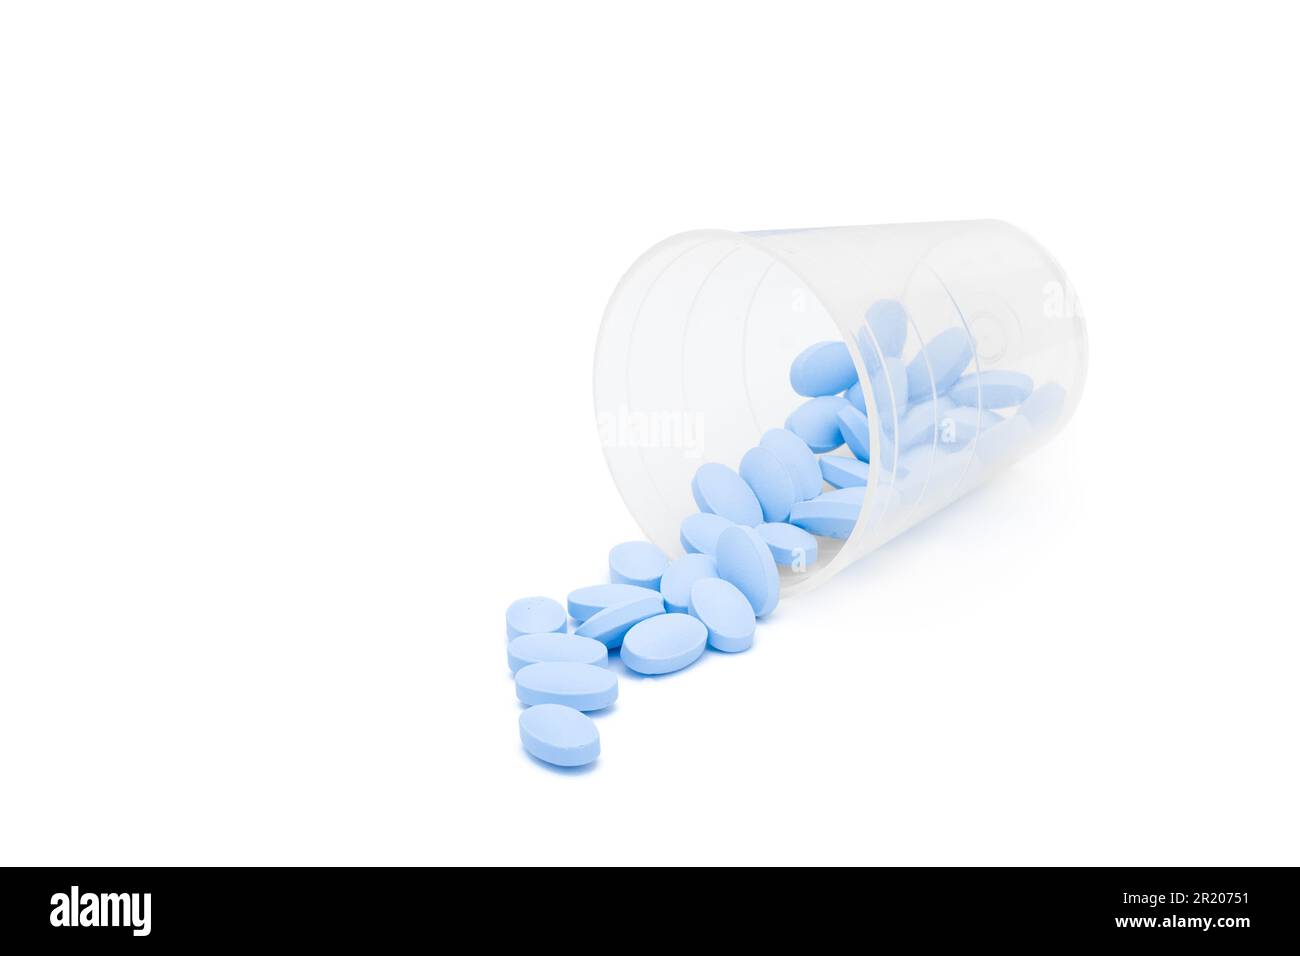 Des pilules bleues ont été déversées hors de la tasse à médicaments Banque D'Images